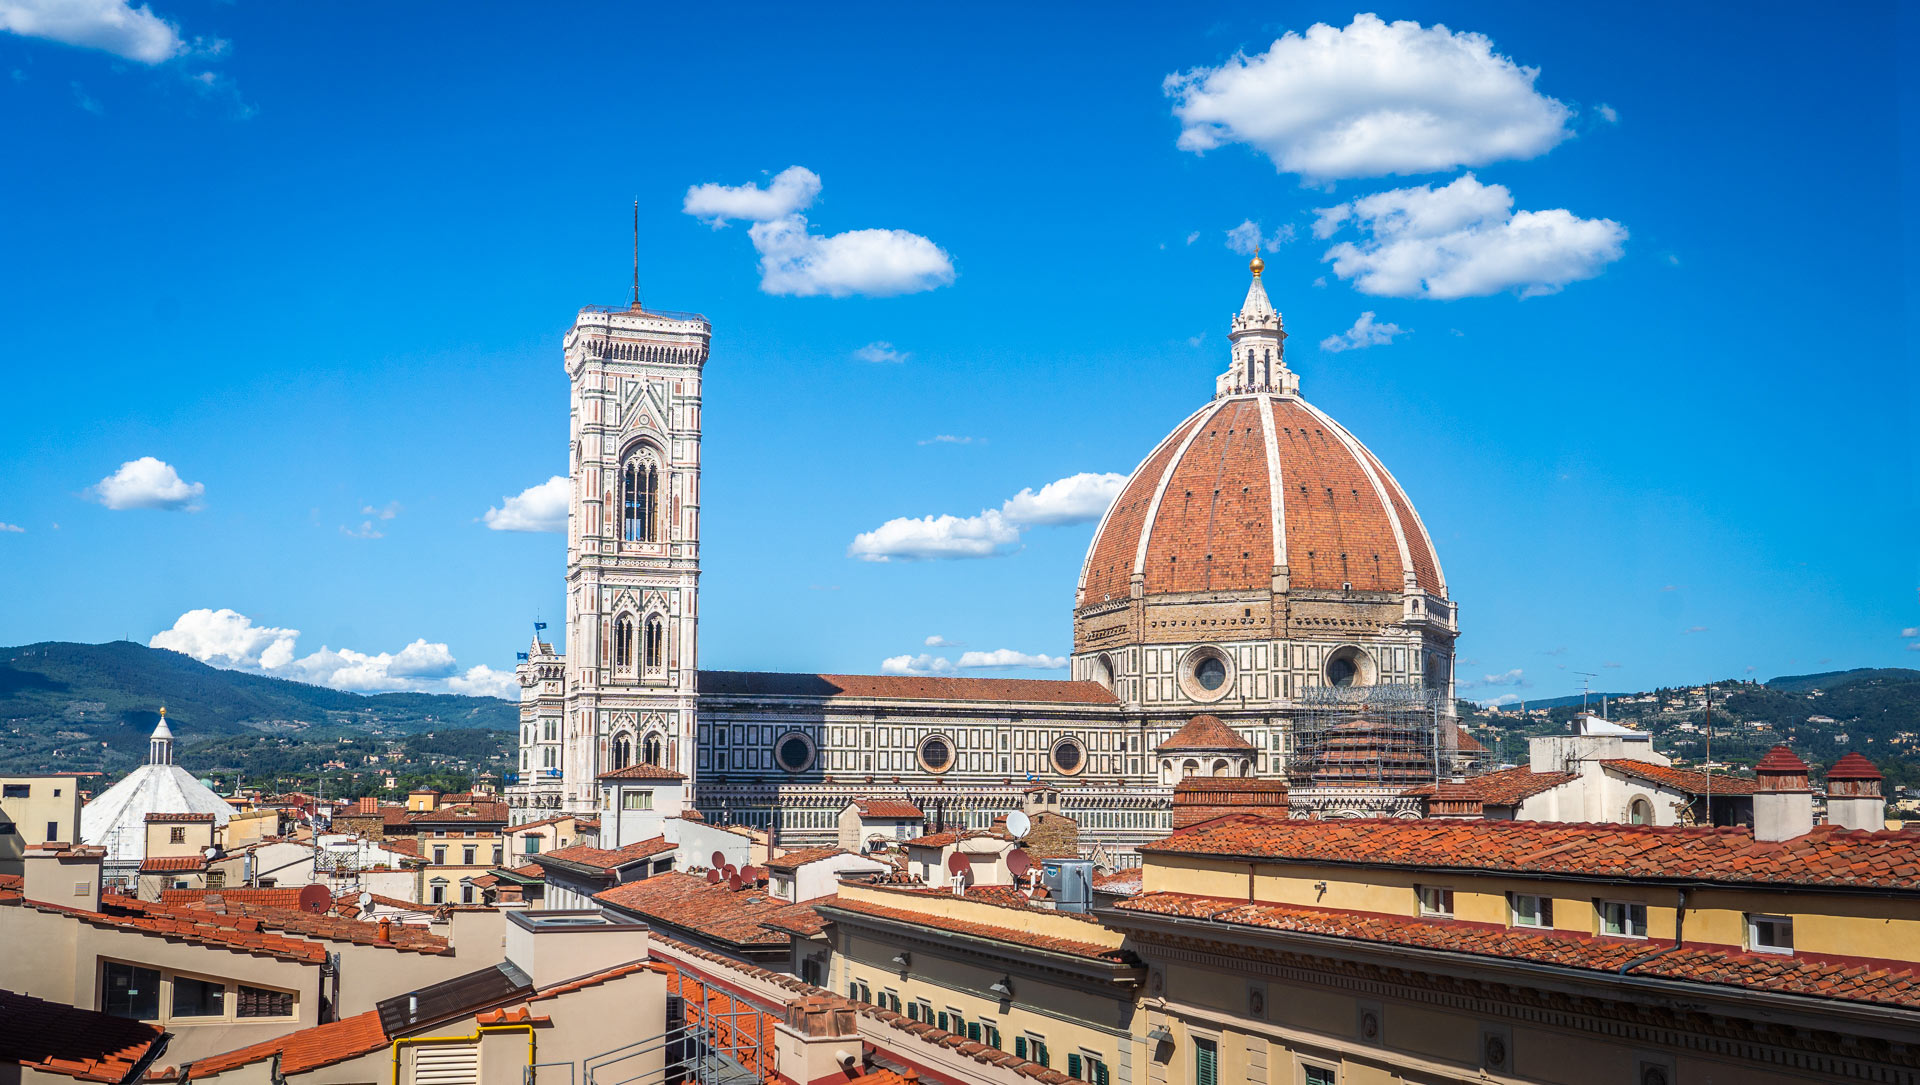 Duomo de Florence.